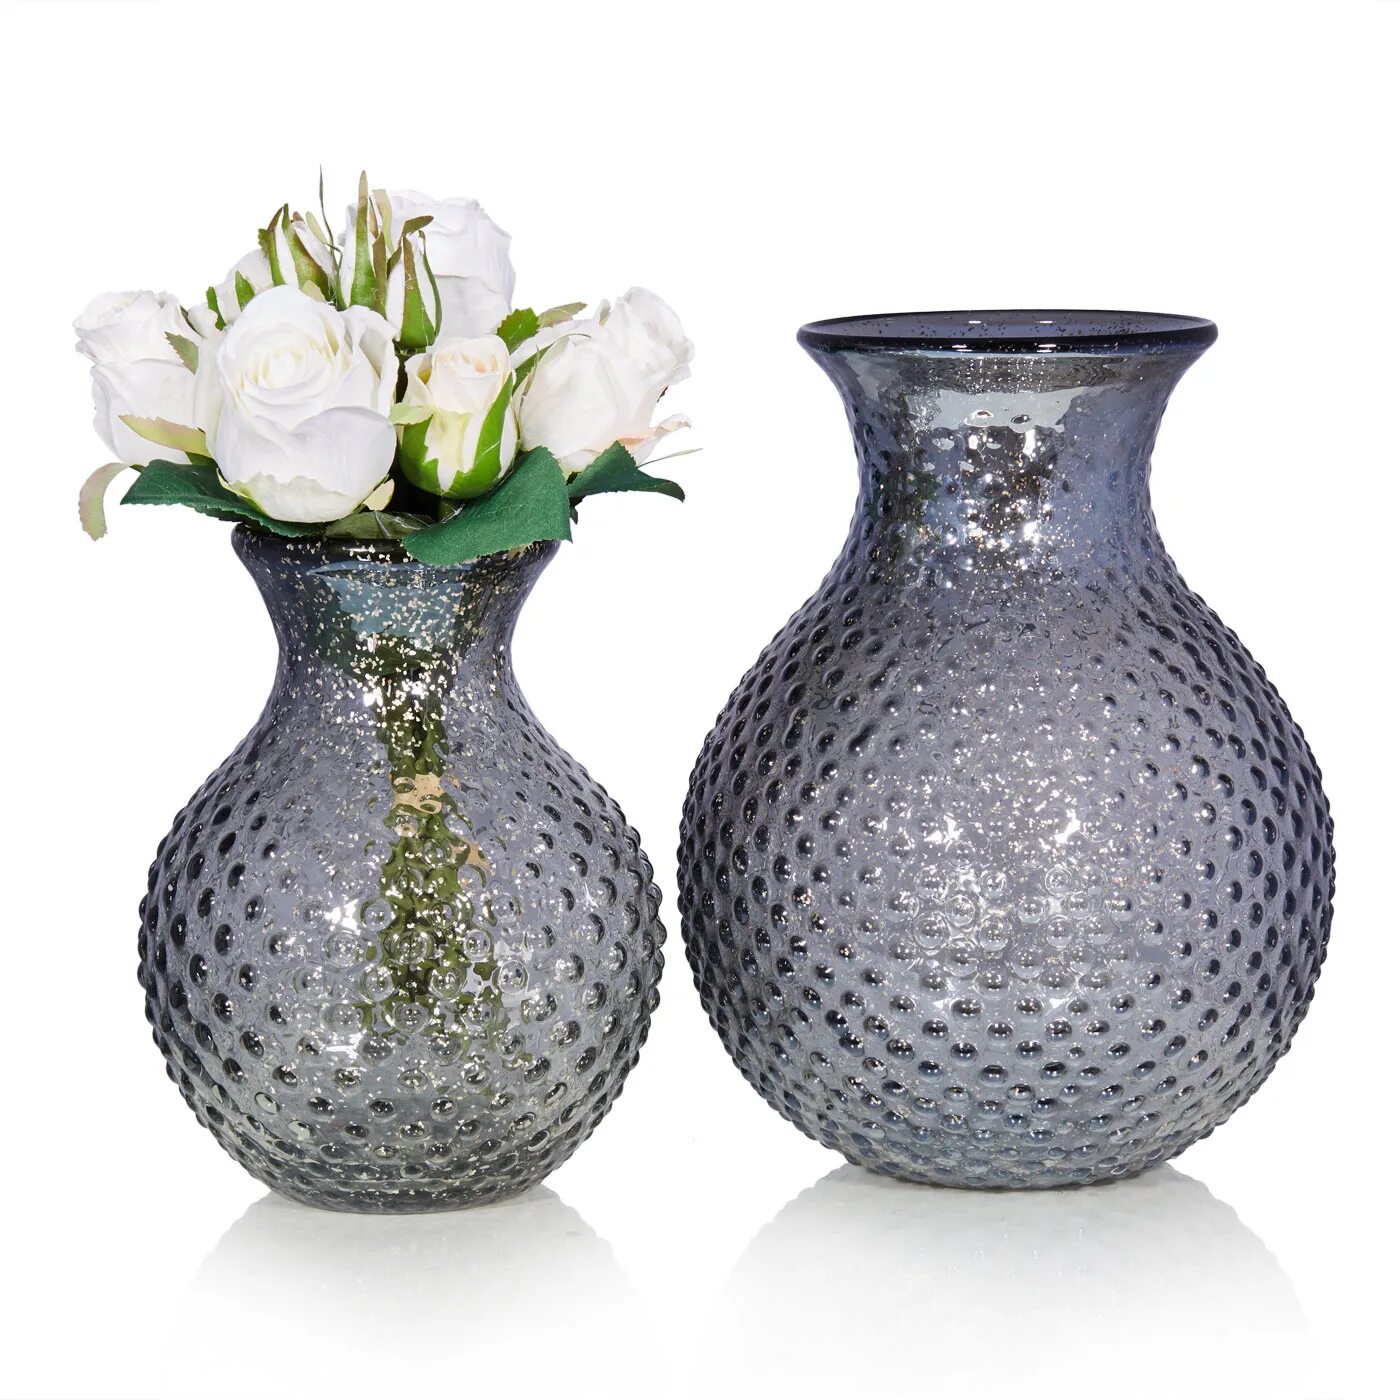 Ваза томск. Ваза для цветов. Красивая ваза для цветов. Необычные вазы. Стильные вазы.